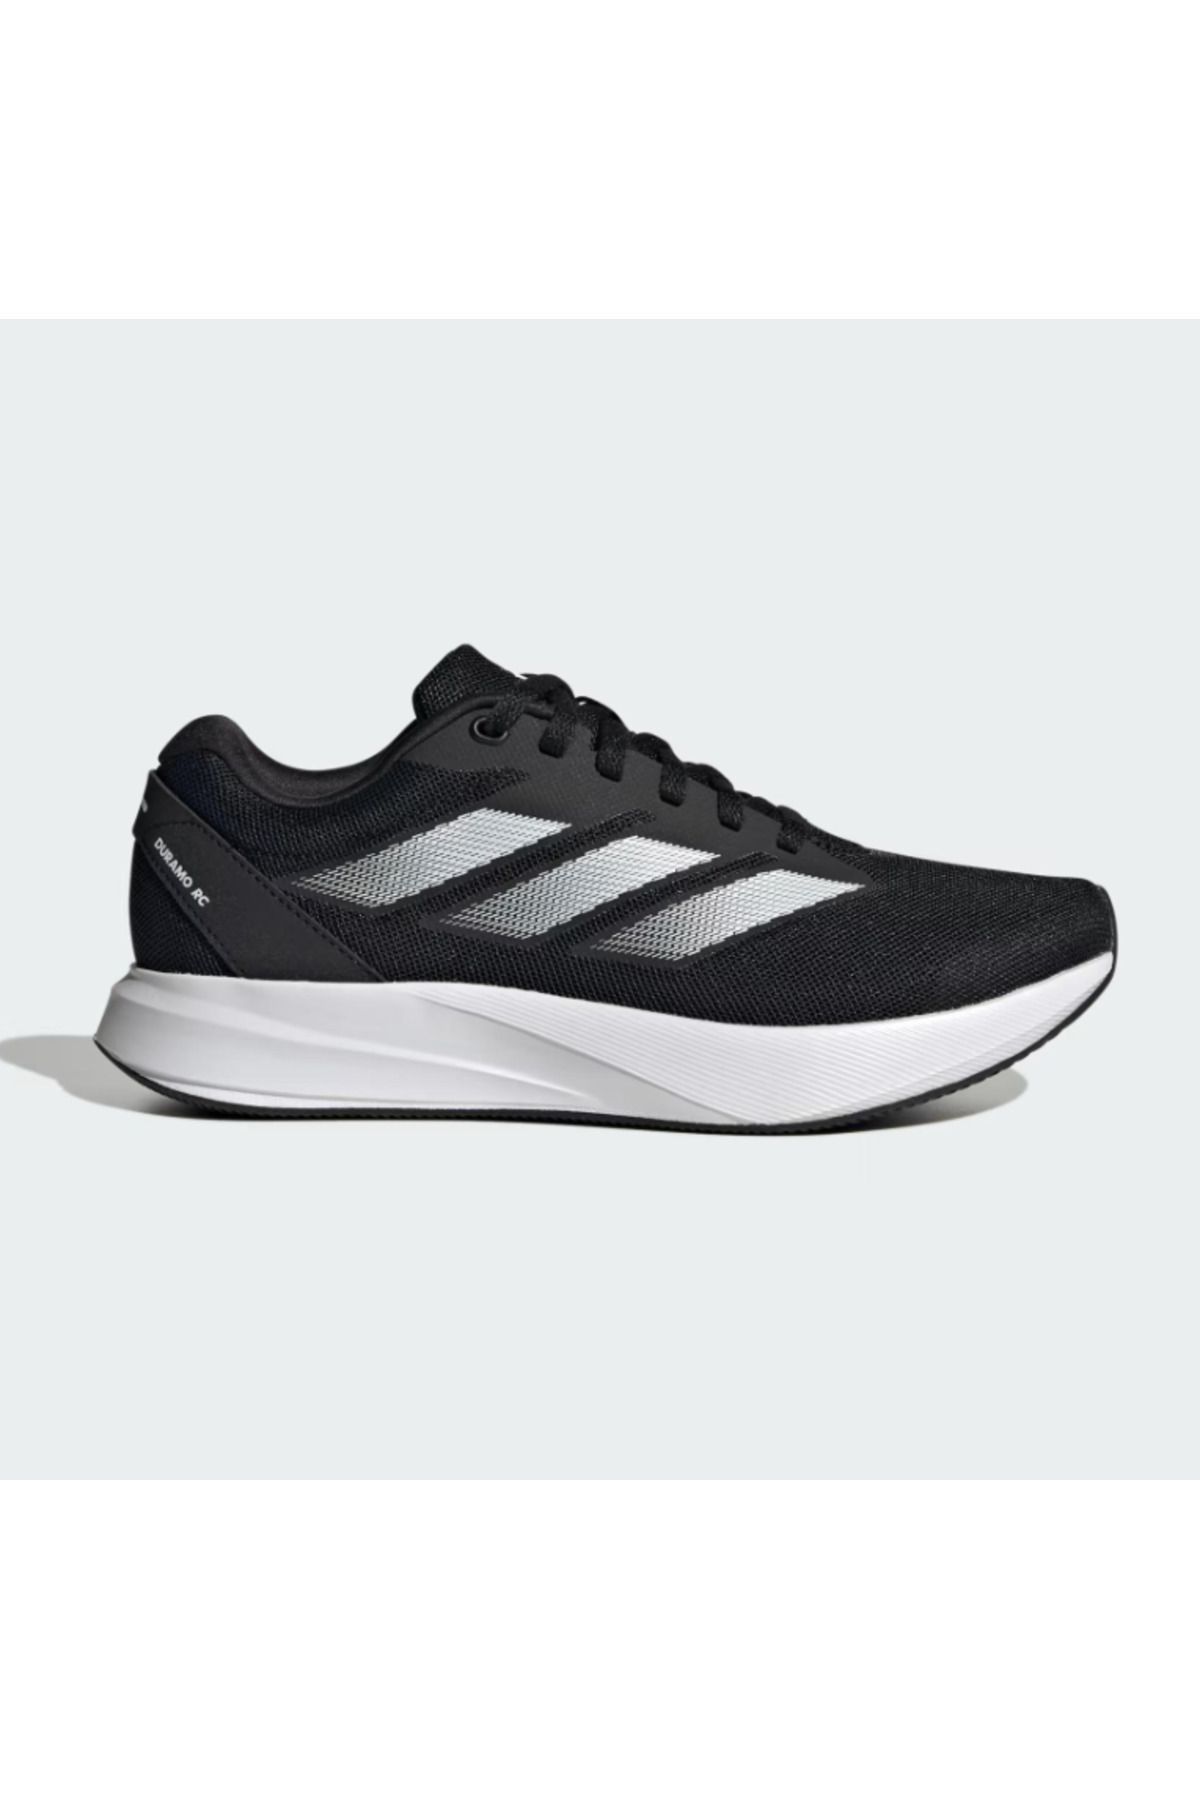 adidas Duramo Rc Kadın Koşu Ayakkabısı Id2709